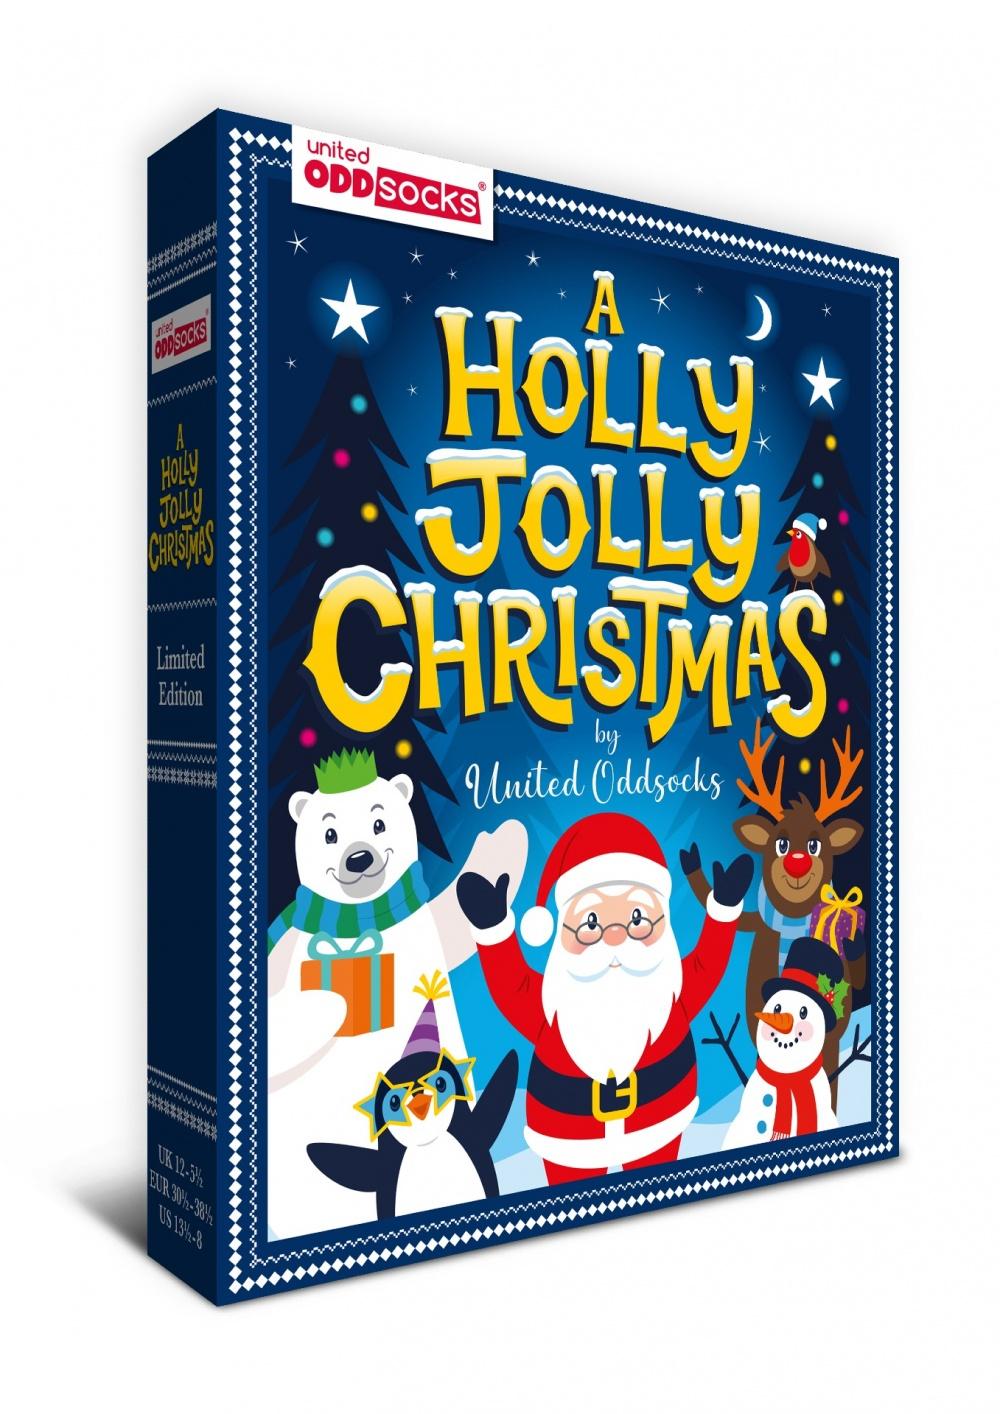 Holly Jolly karácsonyi gyerek zokni szett - 6 db különböző mintájú